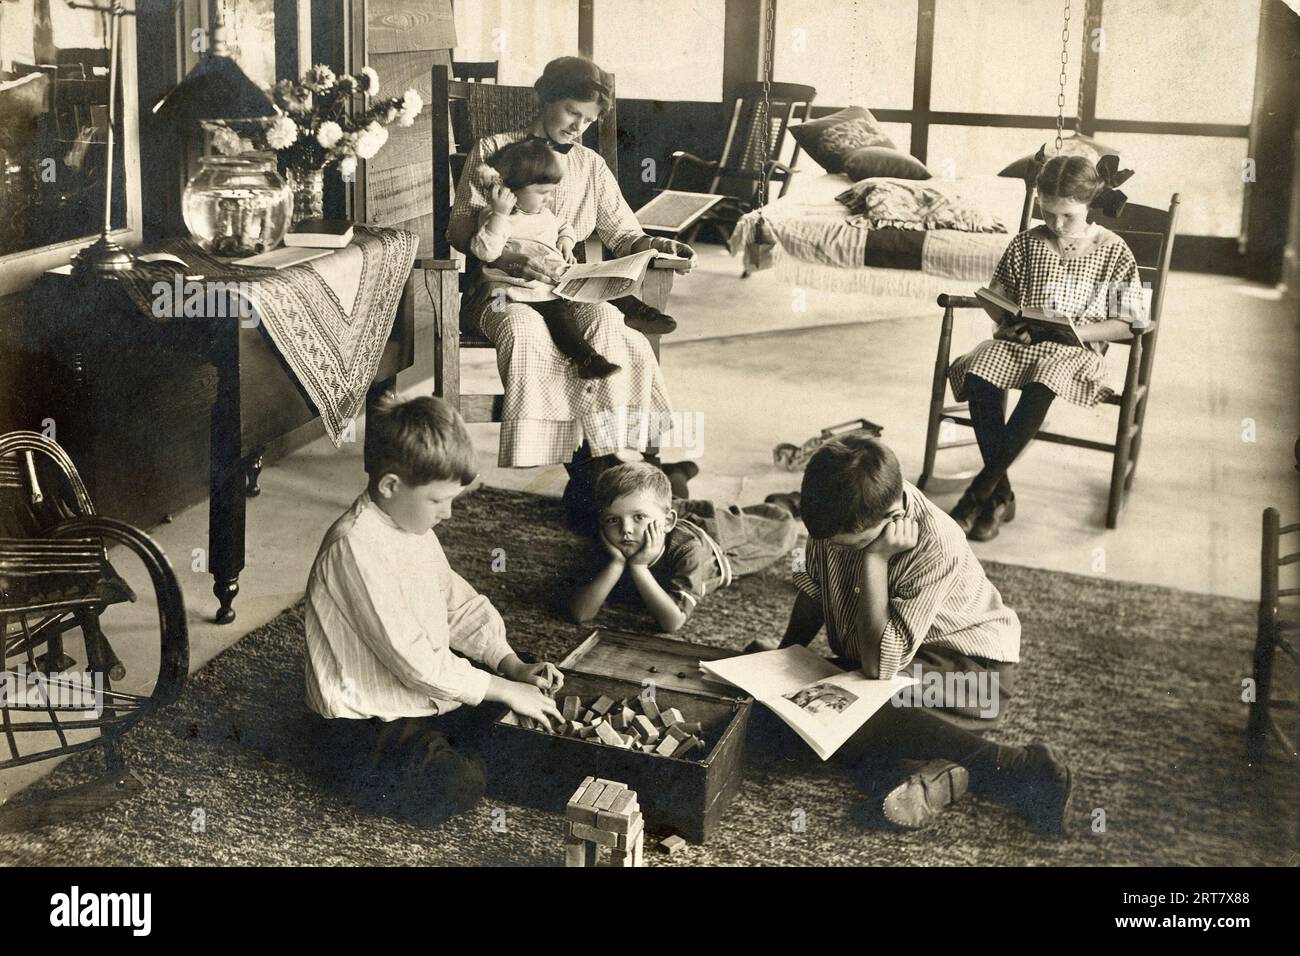 Familie 1900, Familienzeit um 1900, Familienfreizeit um die Jahrhundertwende, Kinder spielen Spiele, Mutter liest dem Kind vor Stockfoto